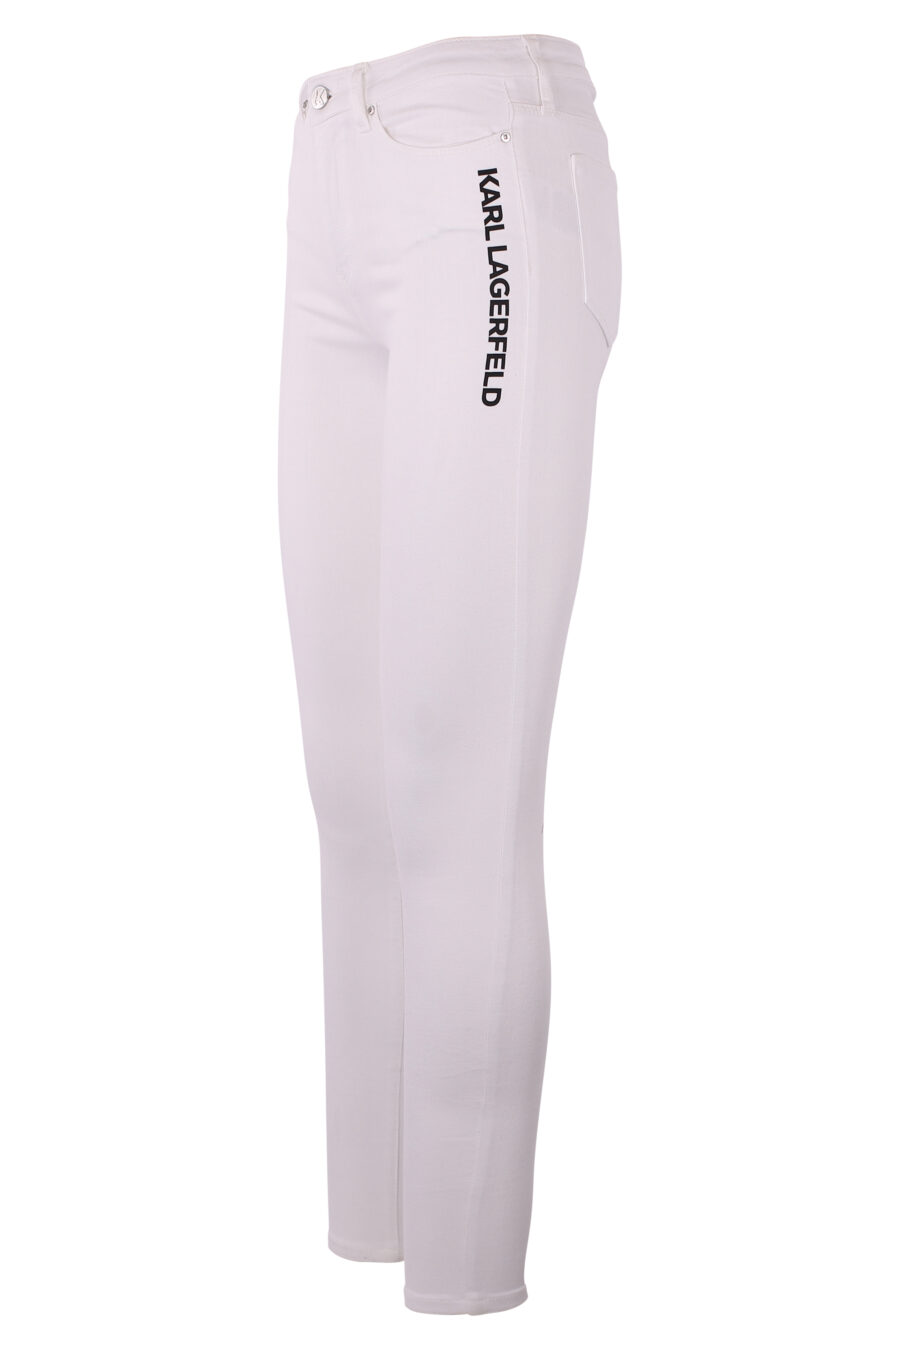 Pantalón vaquero blanco con logo negro vertical - IMG 6308